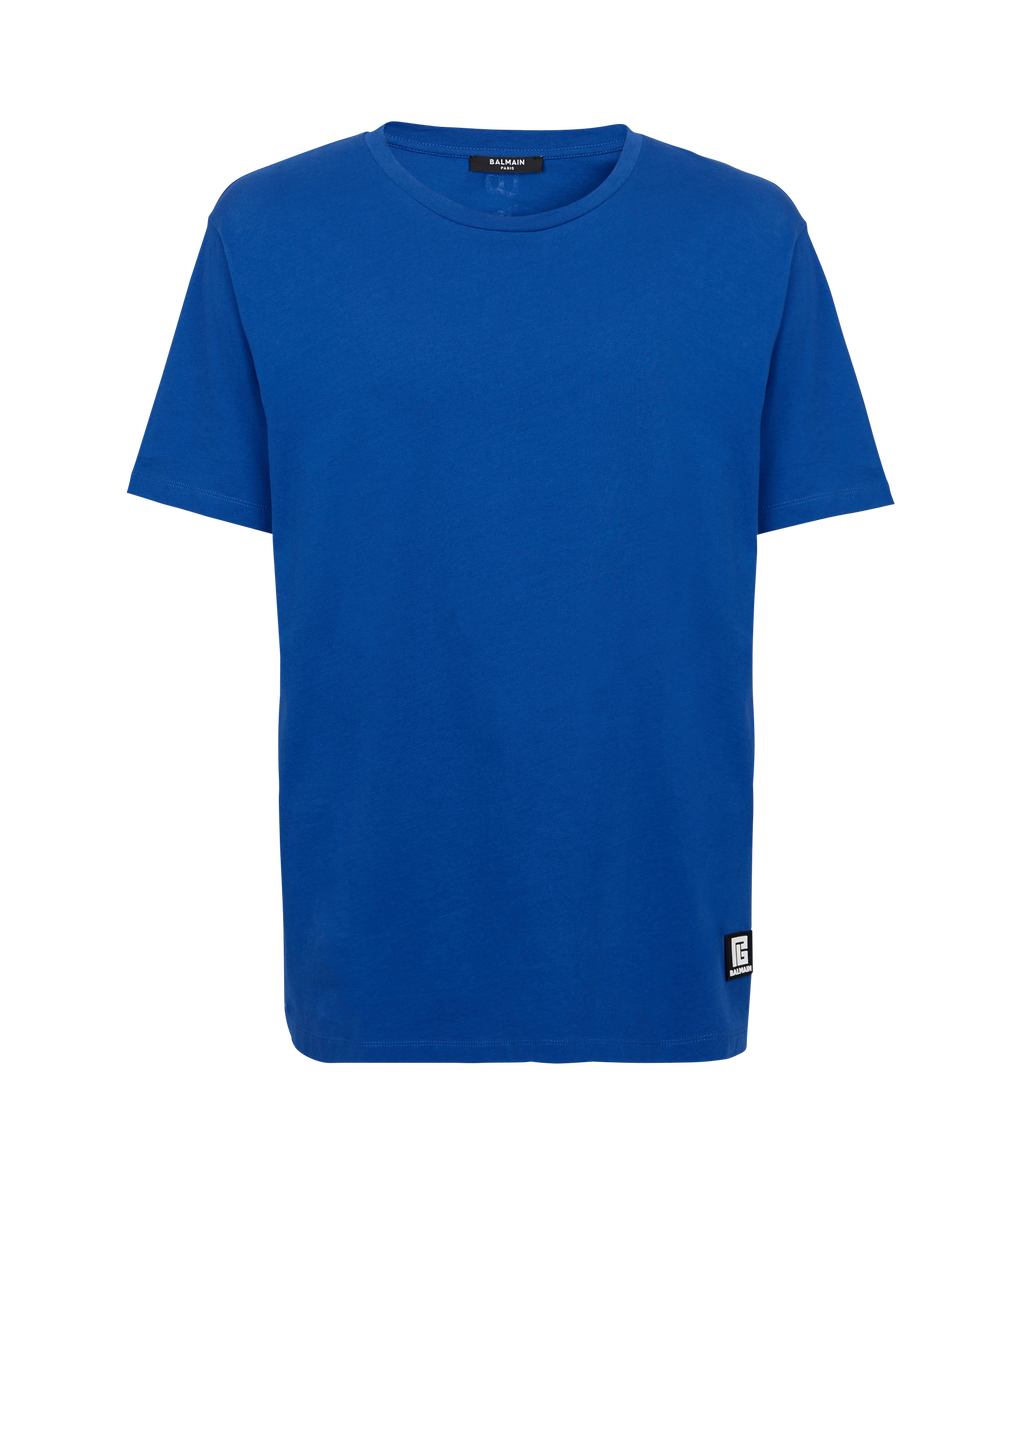 T-shirt oversize in cotone eco-design con logo Balmain, blu scuro, hi-res